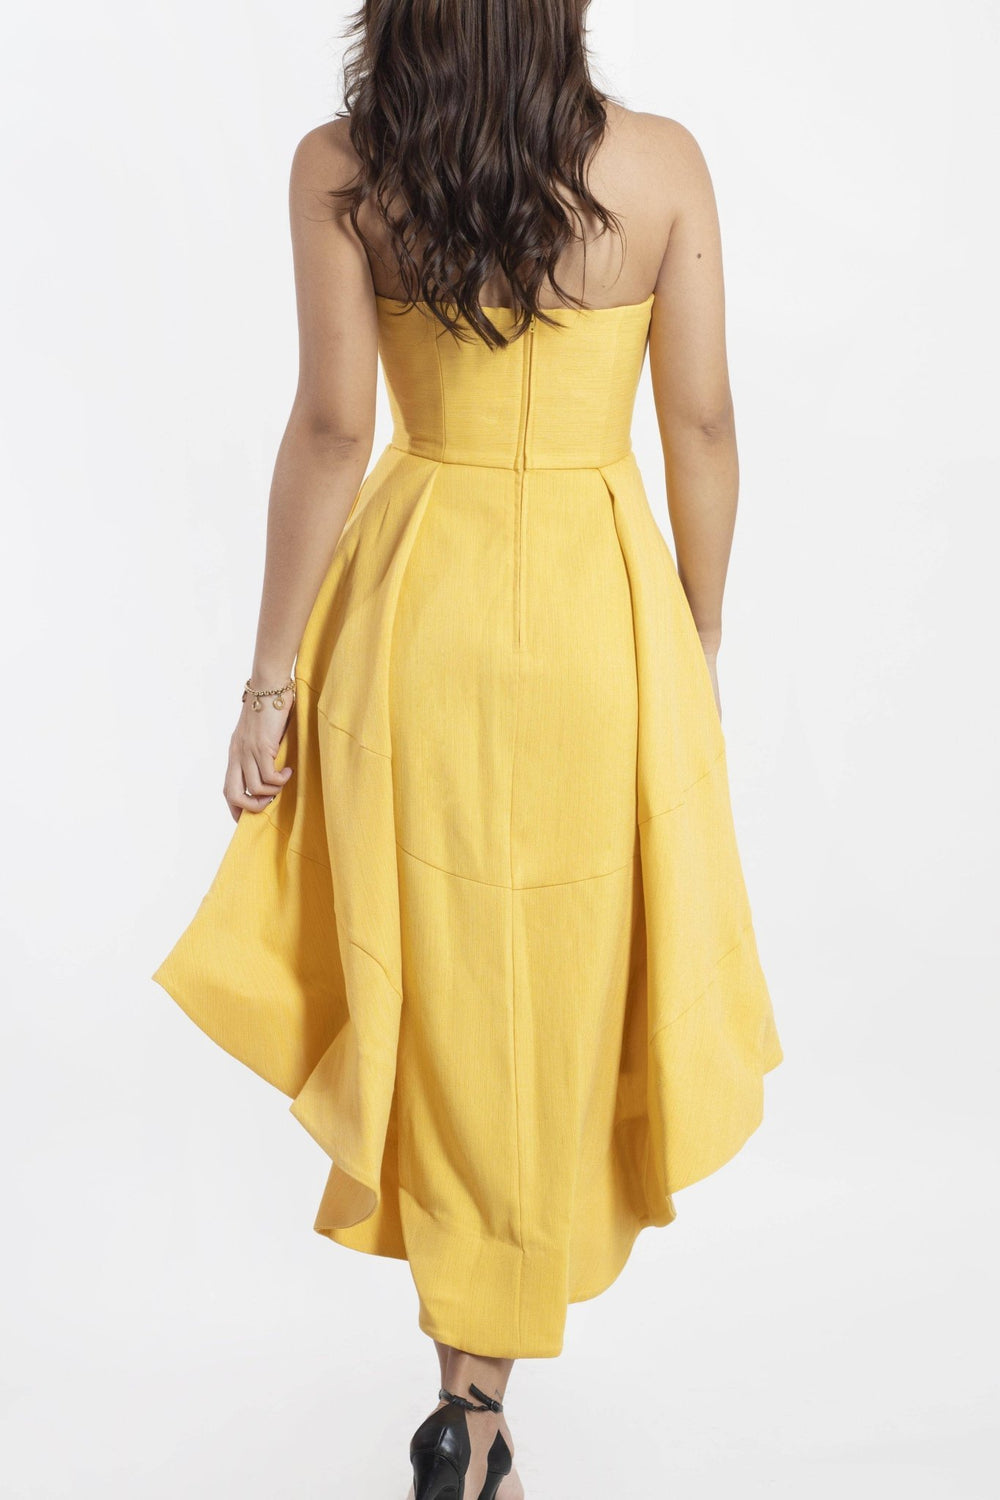 Greta - vestido amarillo - Lend the Trend renta de vestidos mexico